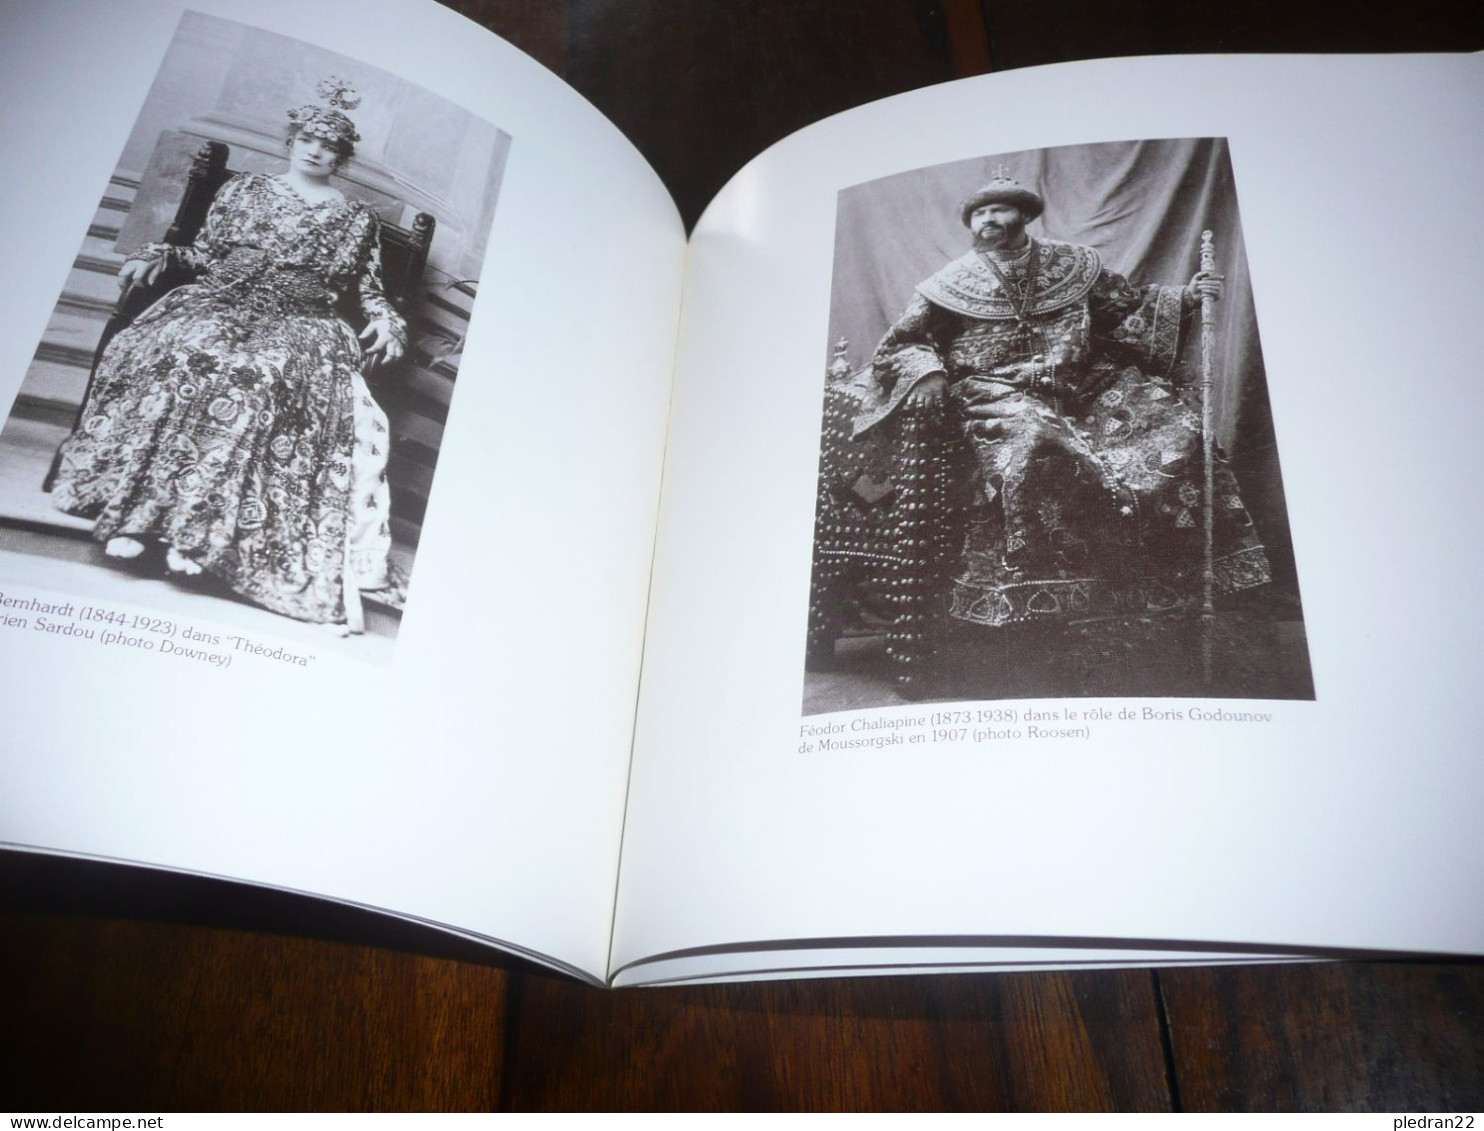 PHOTOGRAPHIES ANCIENNES DE PERSONNALITES VISAGES DU TEMPS JADIS LAROUSSE 1976 EDITION HORS COMMERCE - Photographs